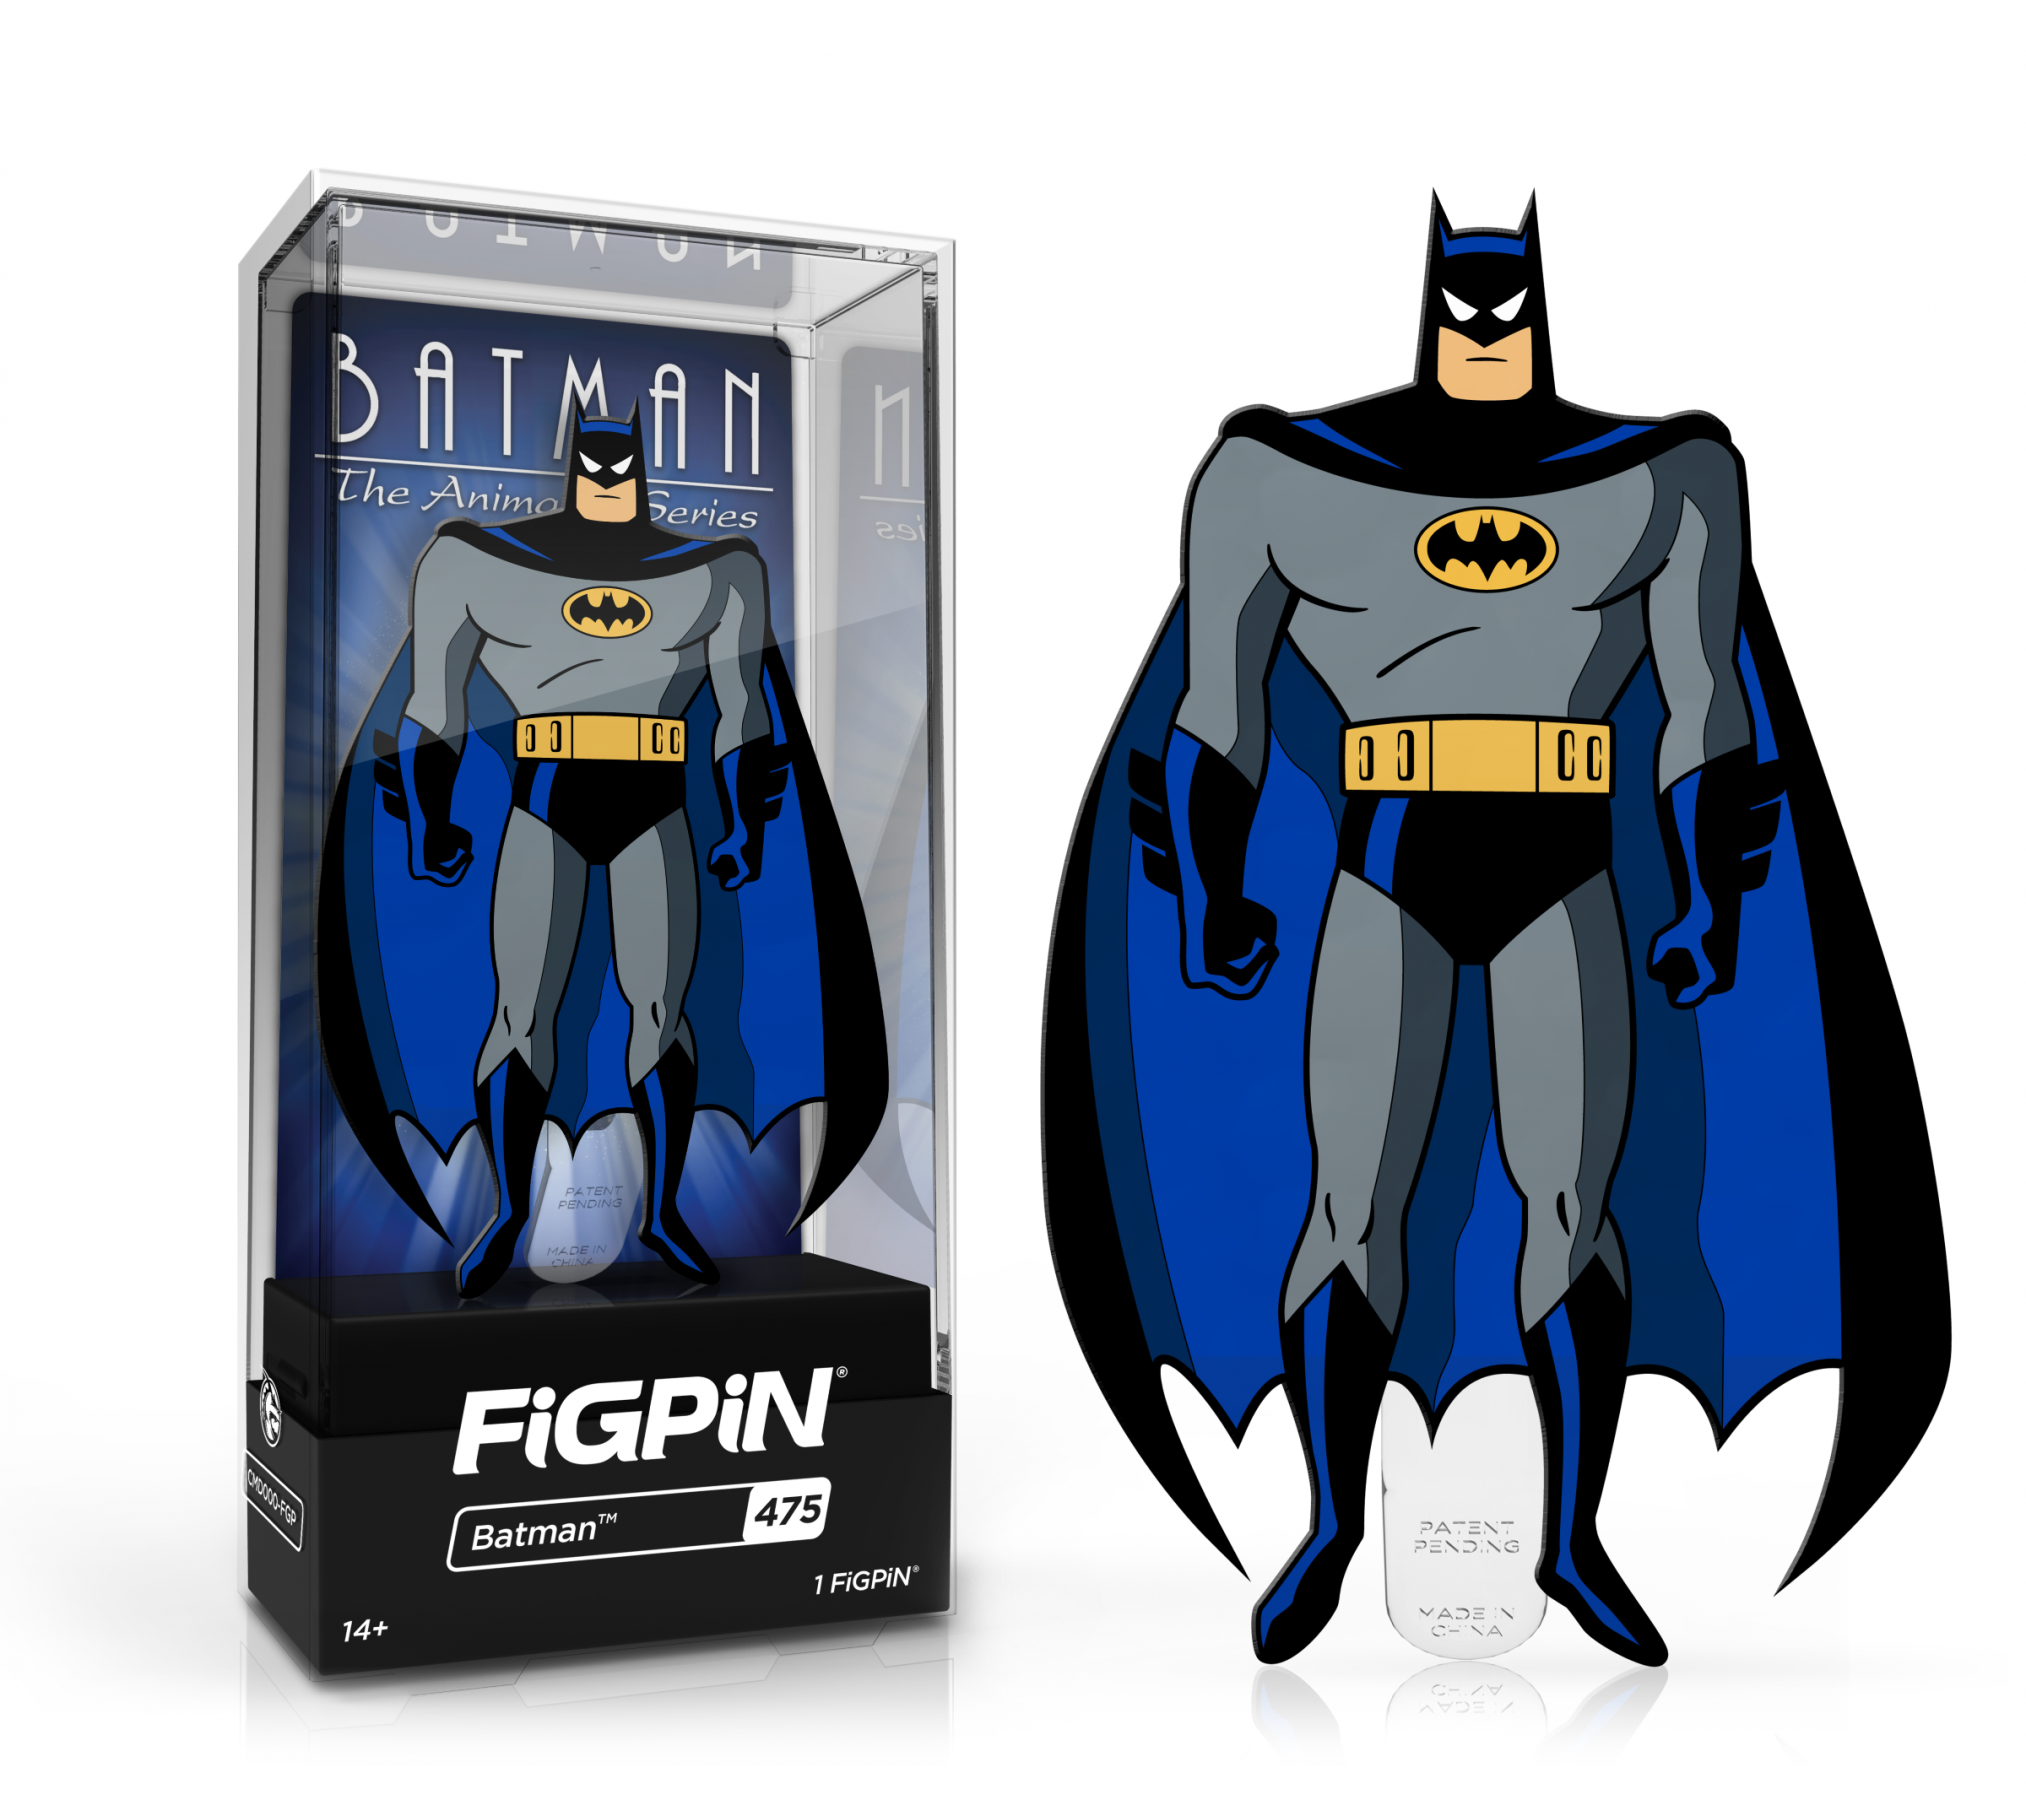 FiGPiN Batman (475) Collectable Enamel Pin MKUXWXP49Z |27864|